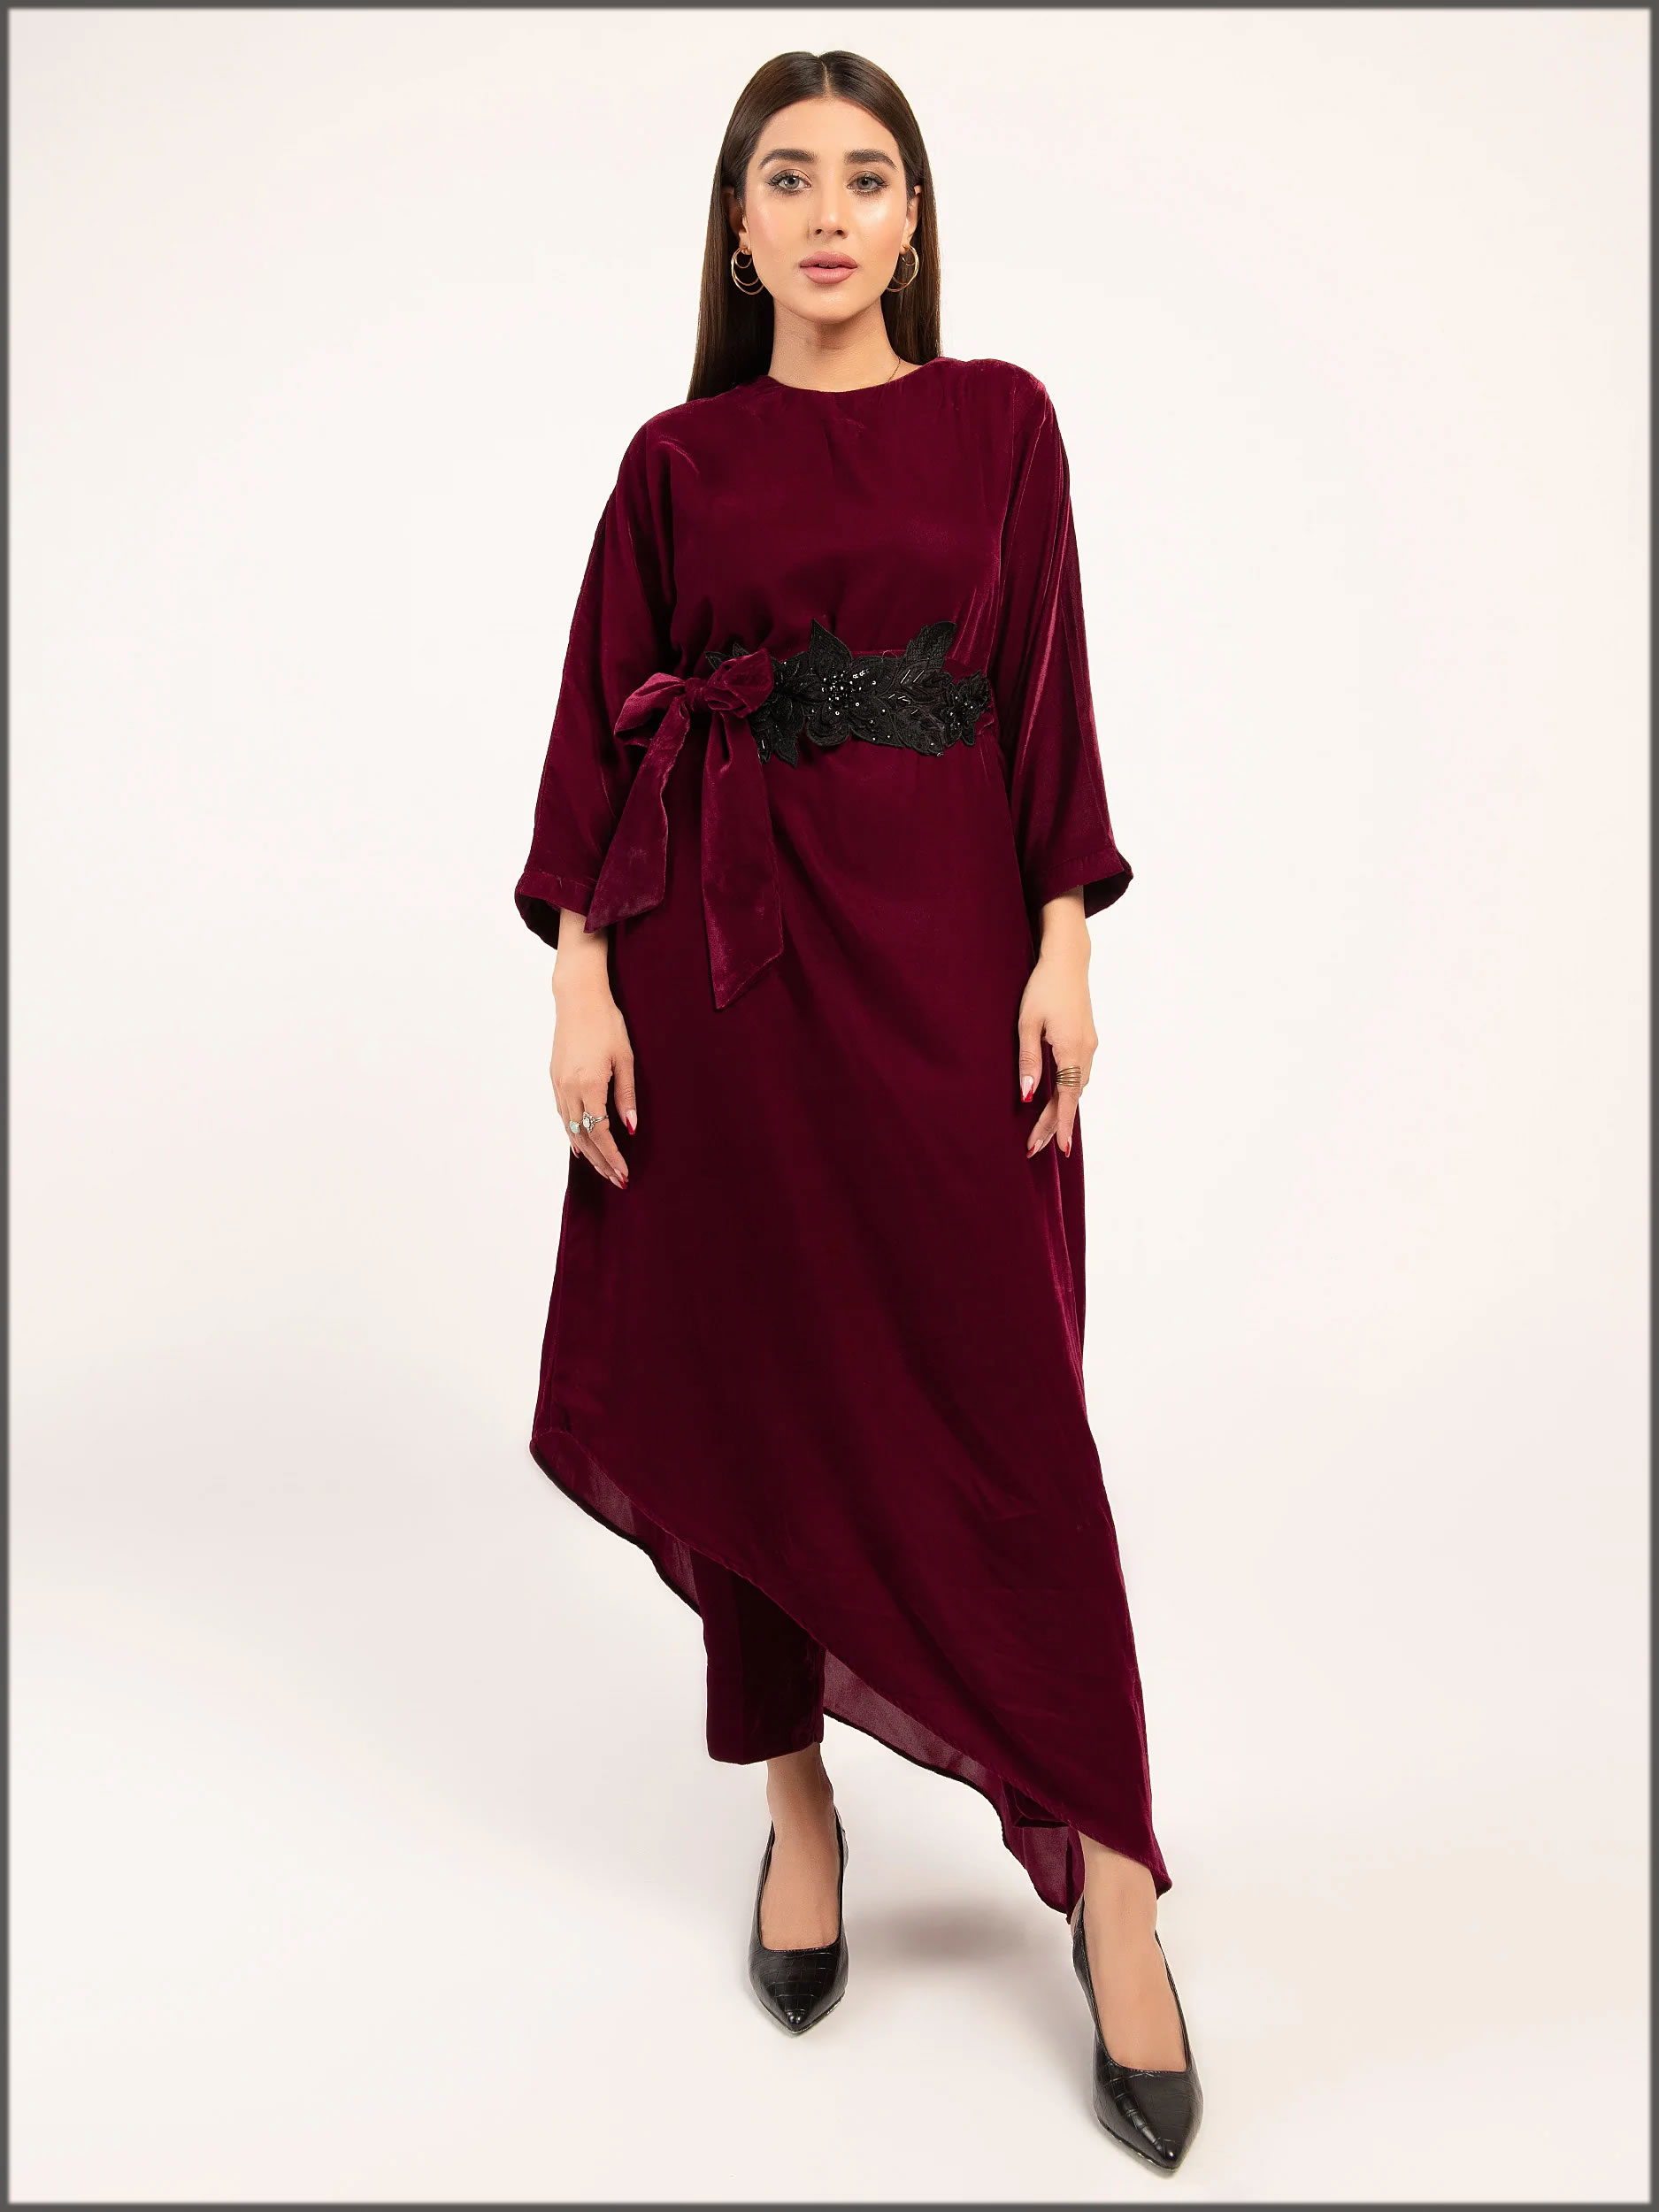 Embellished Velvet Suit by Limelight